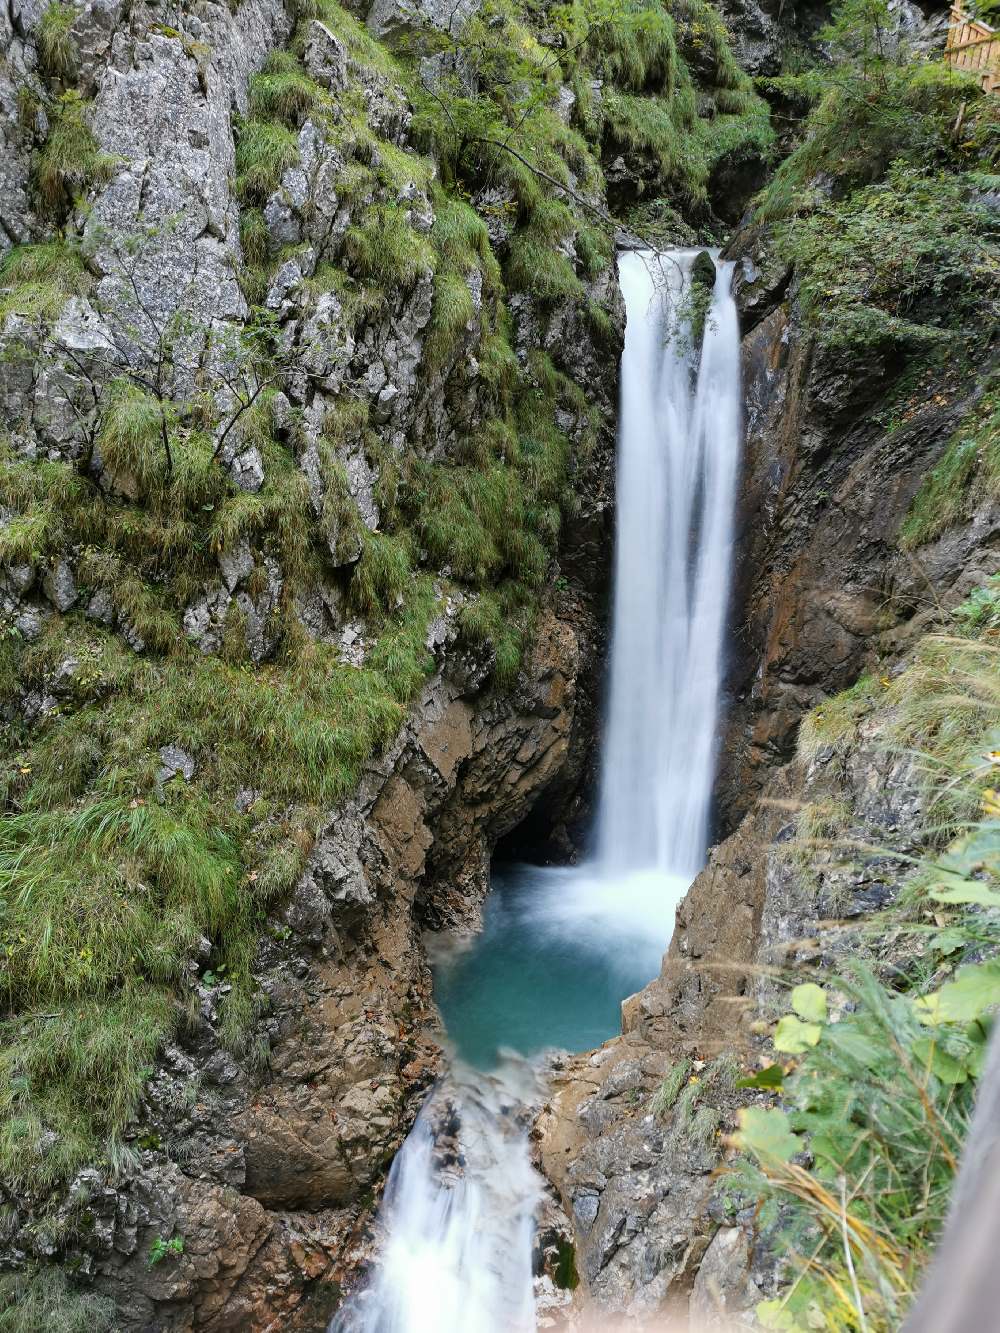 Vodopády Tyrolsko: Vodopády v soutěsce jsou metrů vysoké